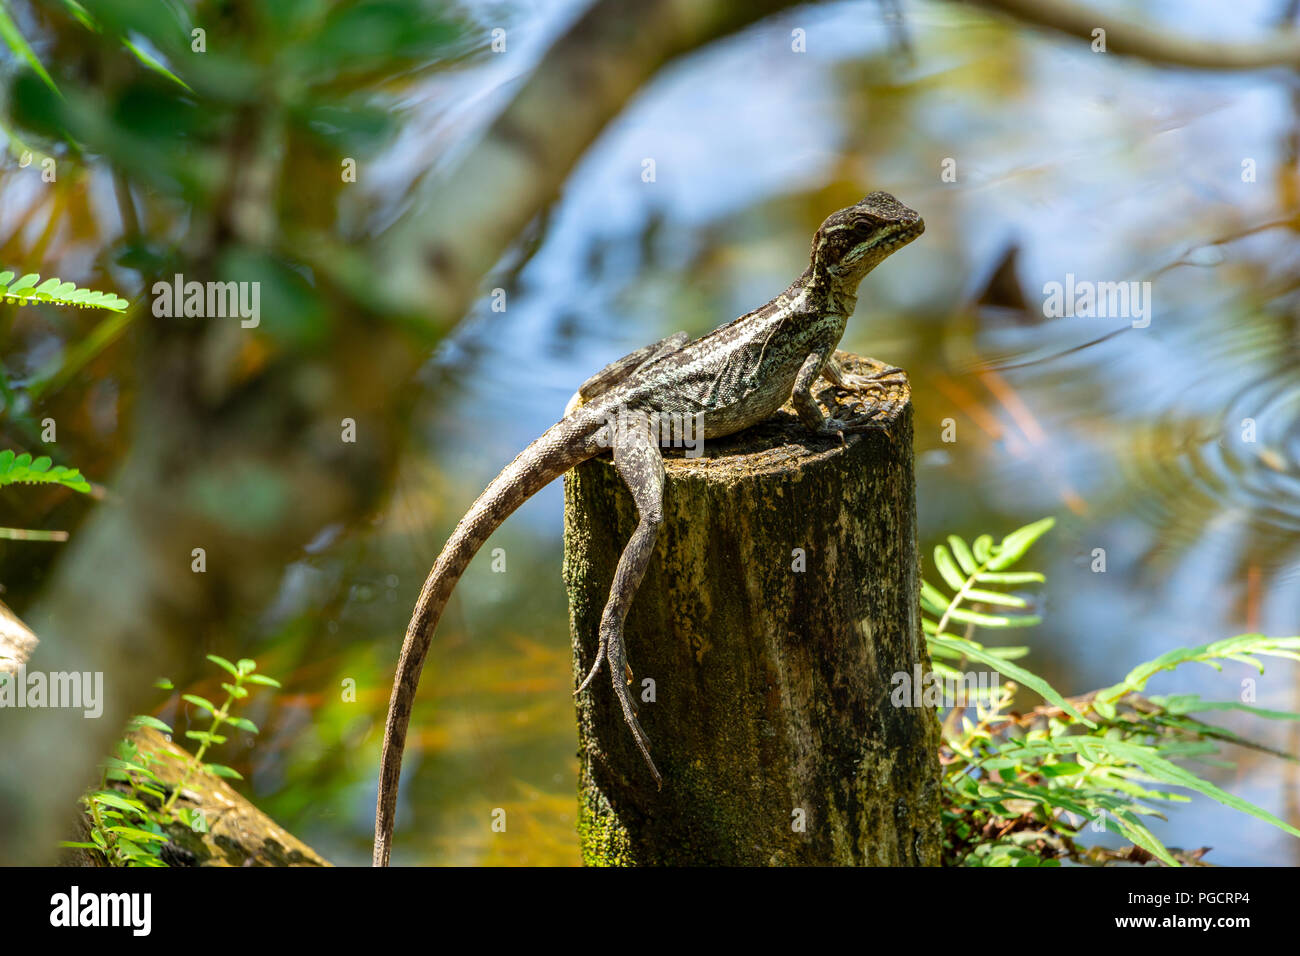 Braun Basilisk (Basiliscus vittatus) Lizard, weiblich, auf Holz Pfosten durch See Wasser - Delray Beach, Florida, USA Stockfoto